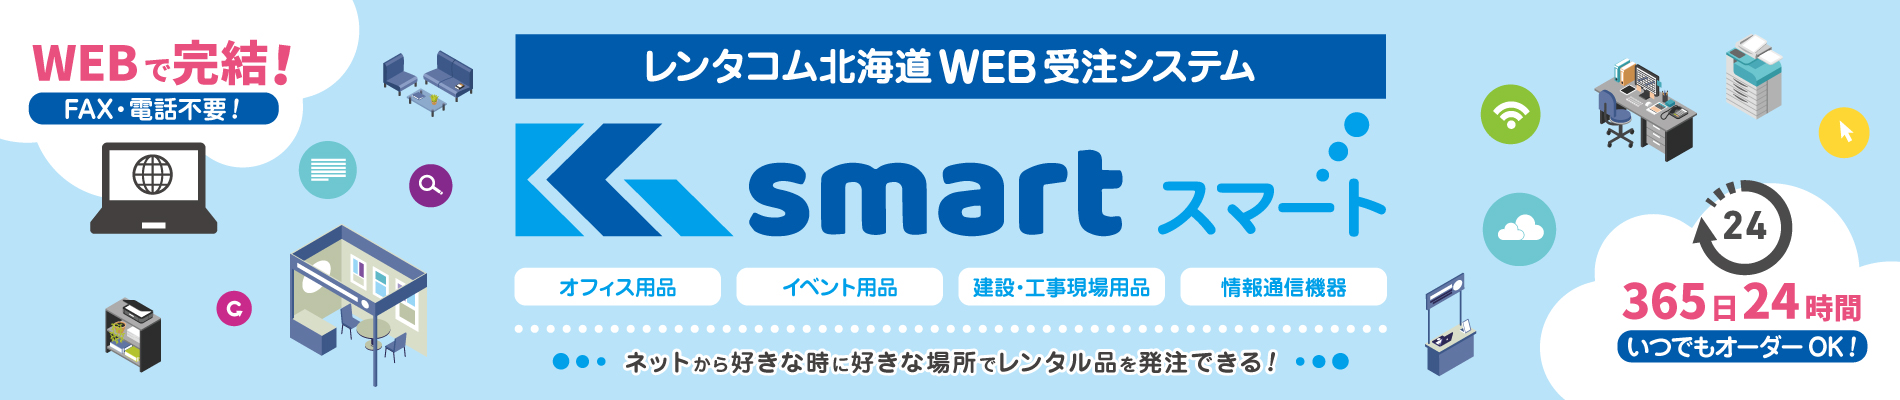 レンタコム北海道 WEB受注システム「K smart」